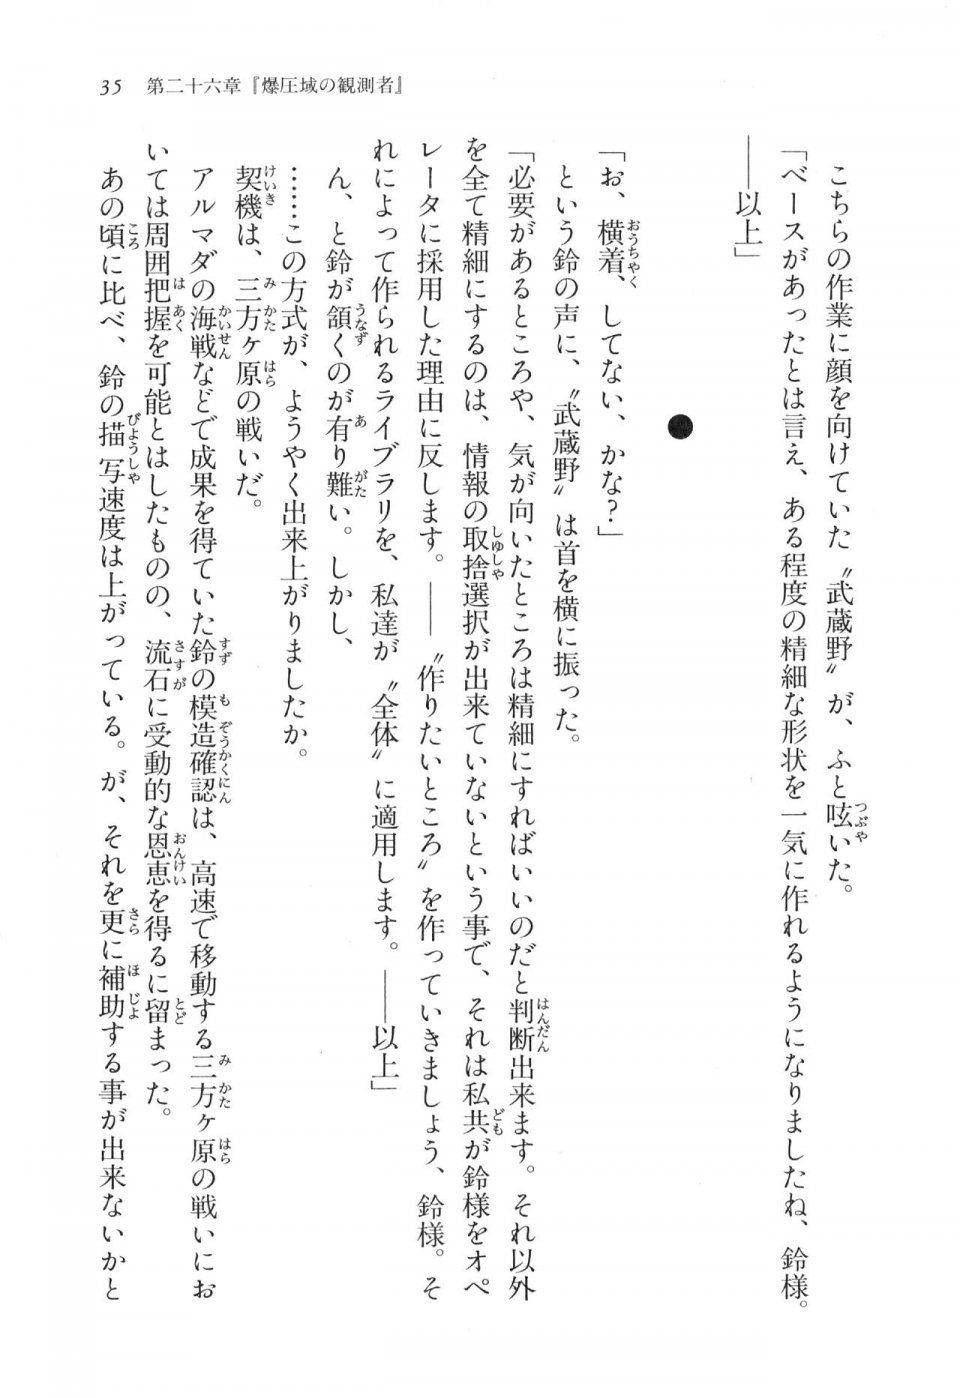 Kyoukai Senjou no Horizon LN Vol 17(7B) - Photo #35